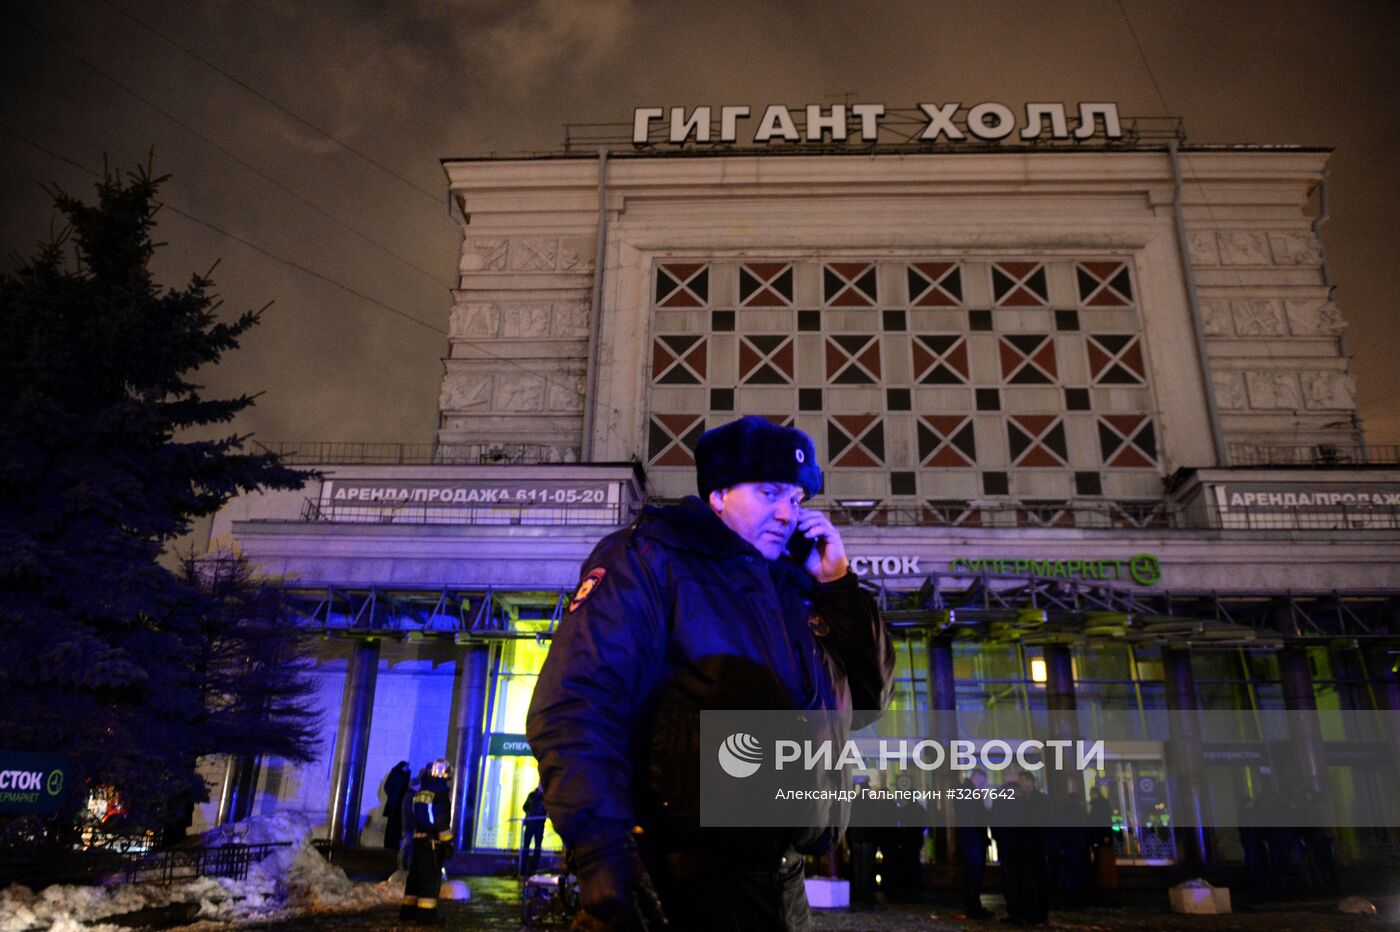 Взрыв в магазине "Перекресток" в Санкт-Петербурге